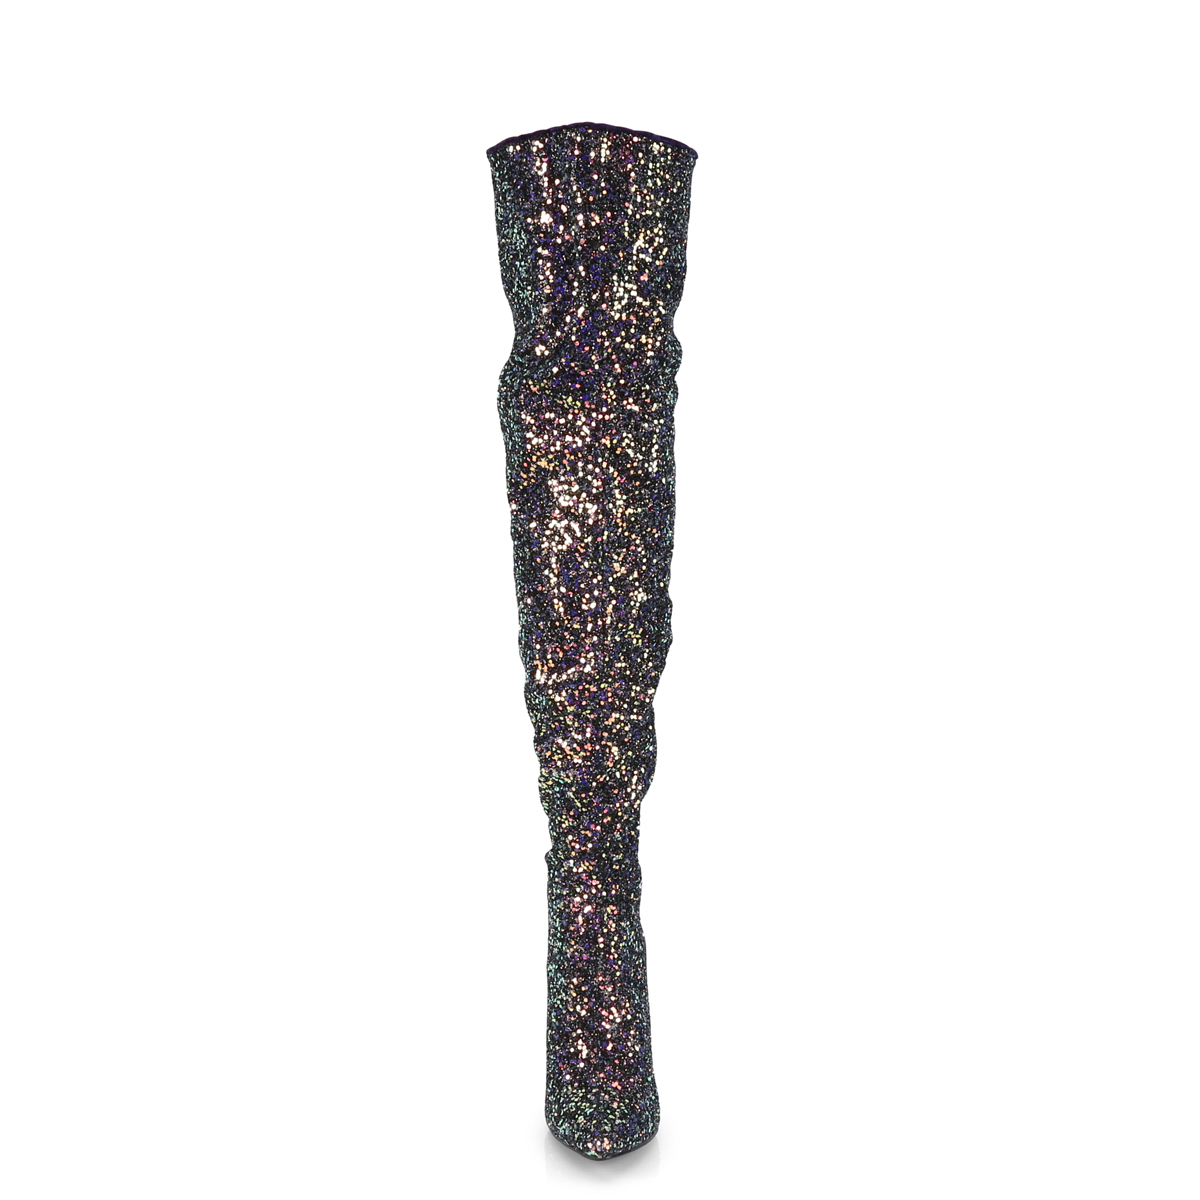 COURTLY-3015 - 2648-10-085 - zwarte paarse glitterlaars met hak in grote maten